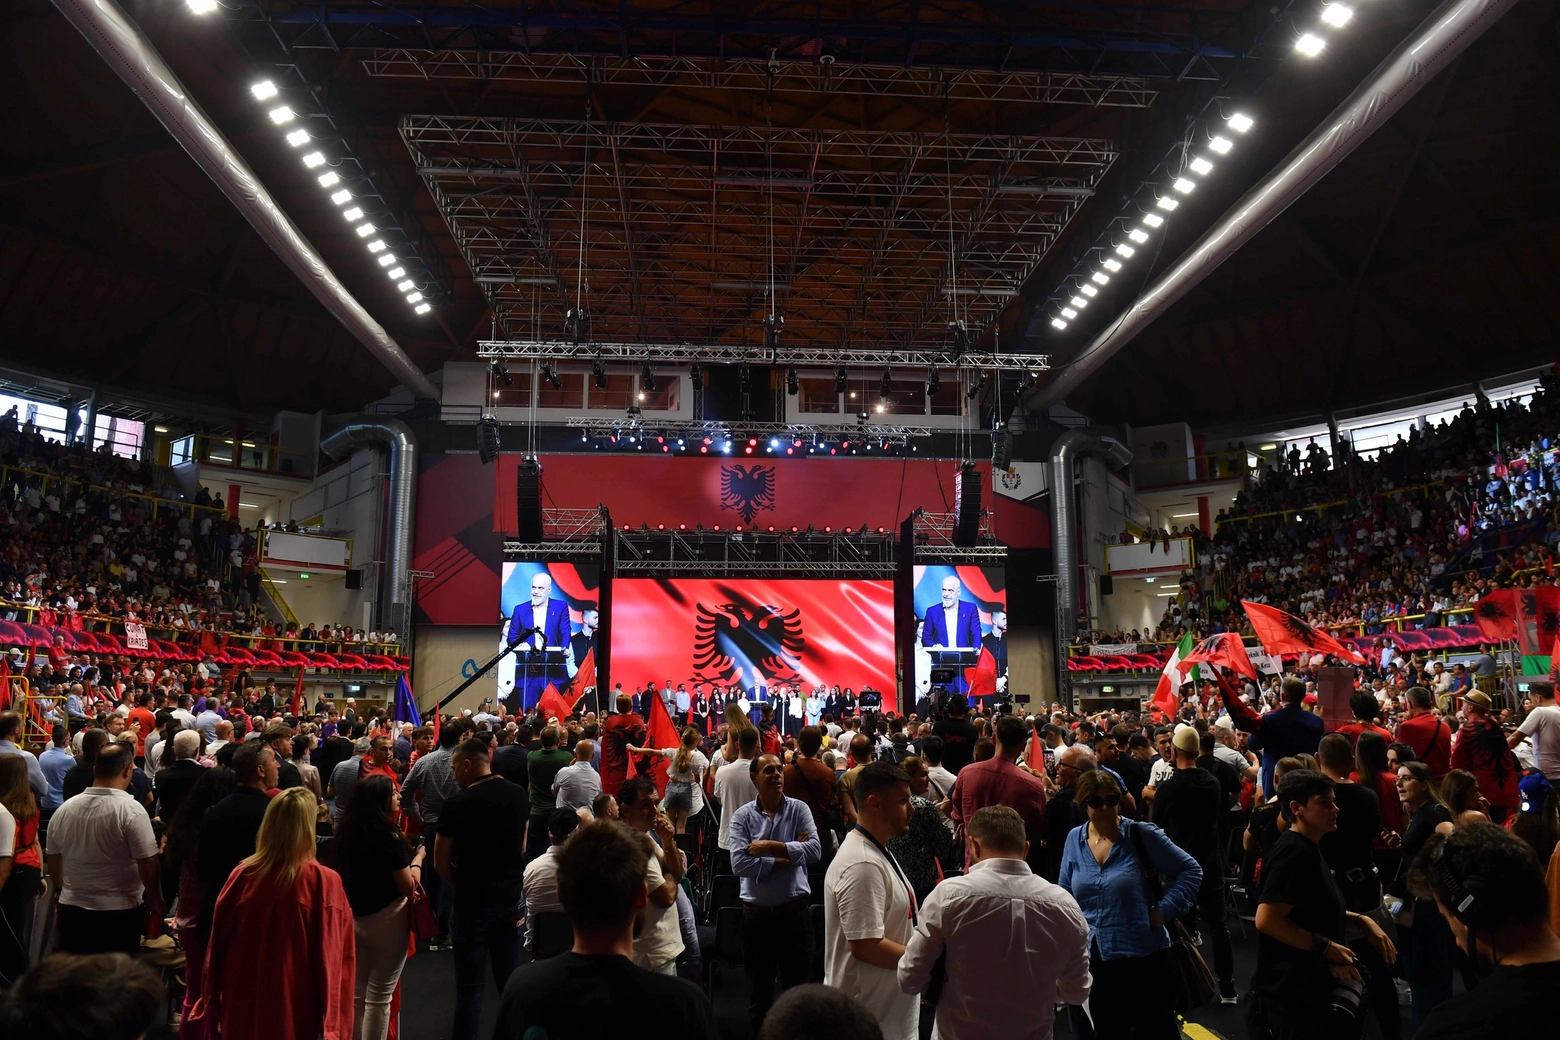 Folla alla E-Work arena per il primo ministro dell'Albania Edi Rama